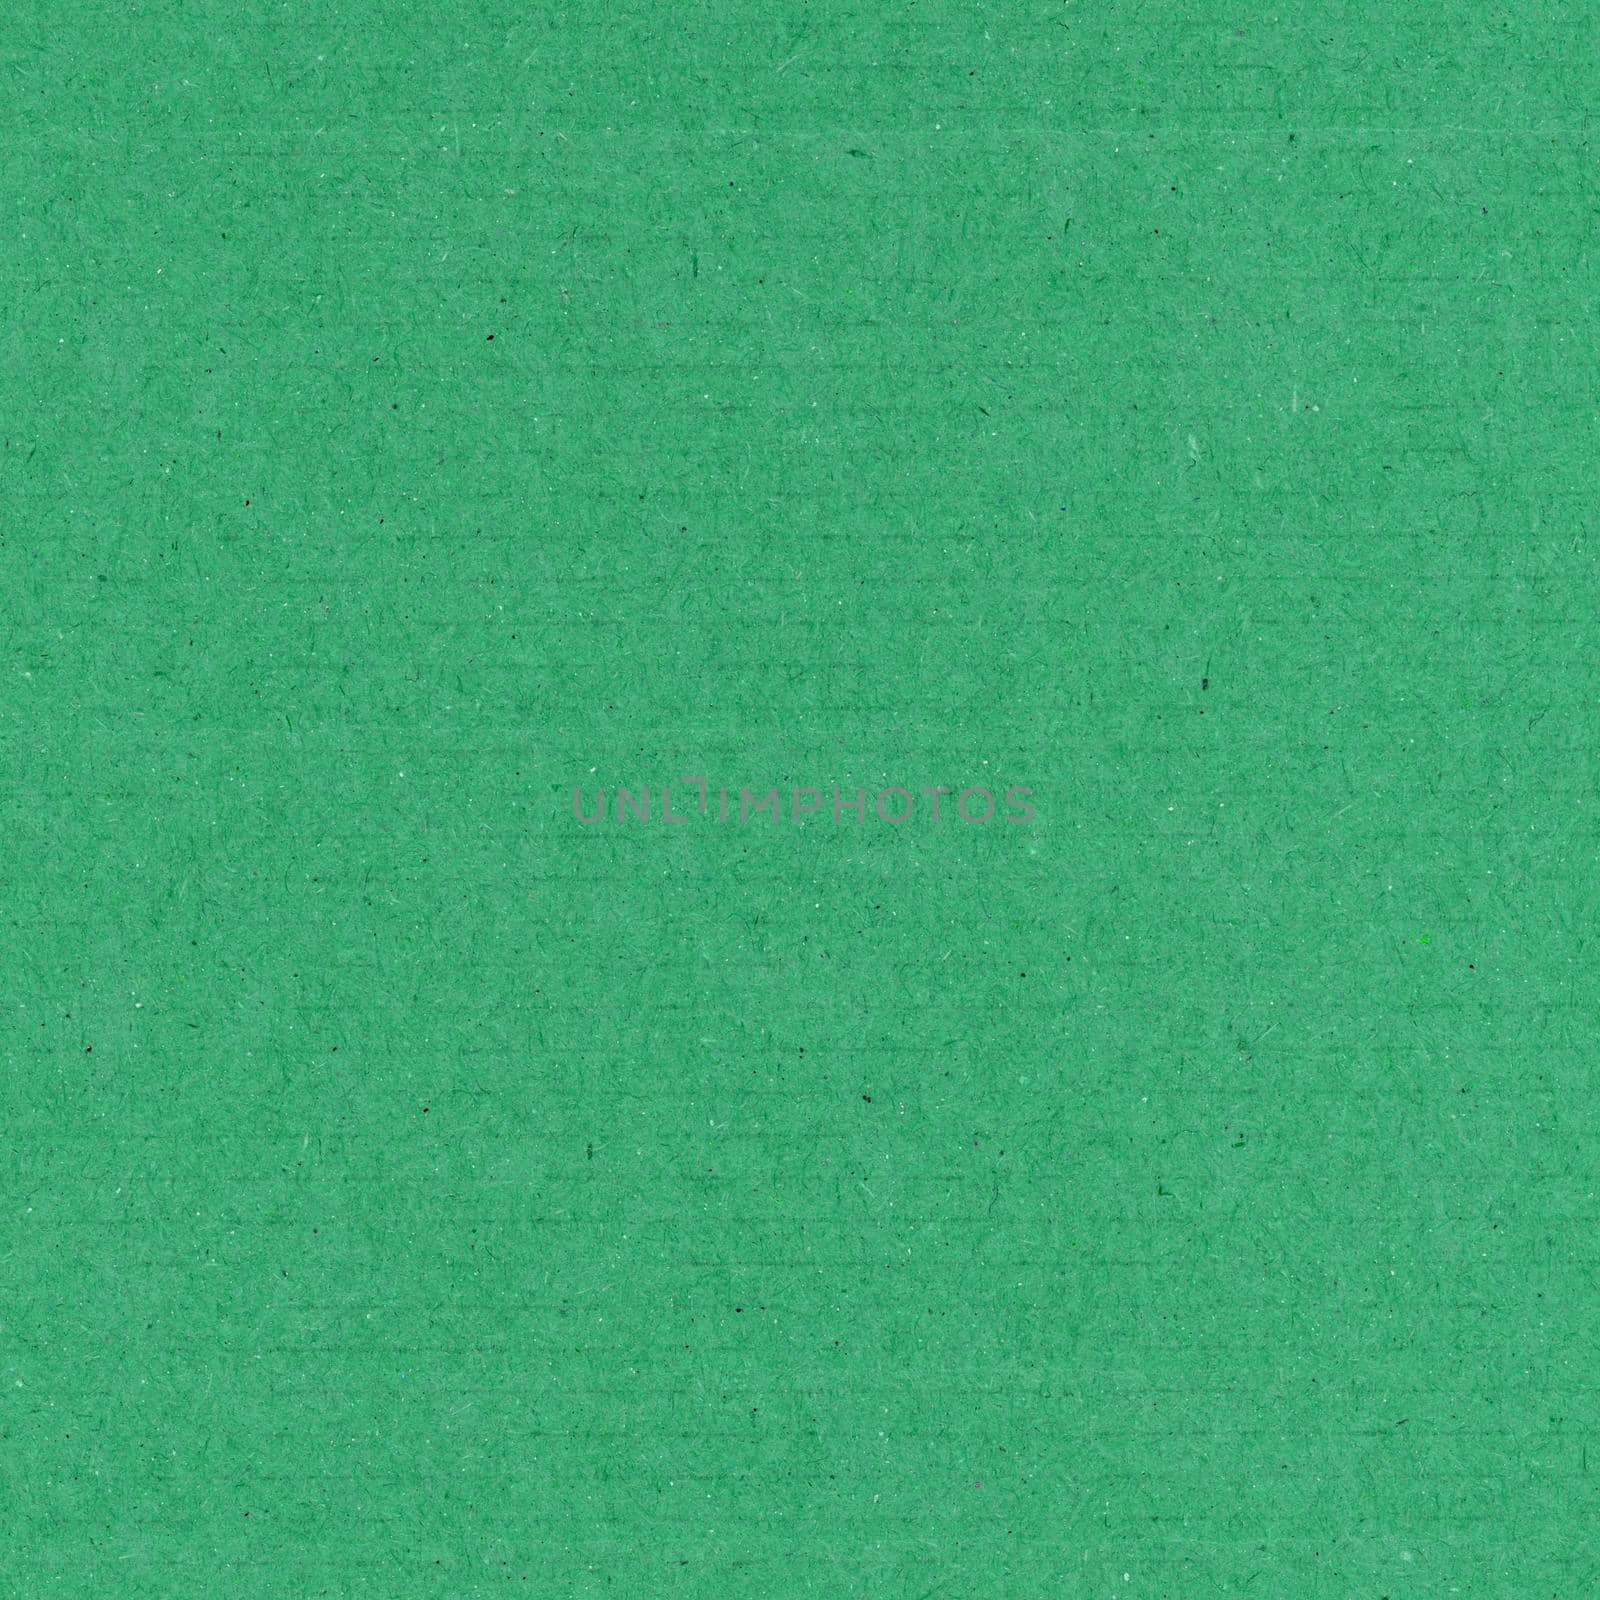 dark green cardboard texture background by claudiodivizia